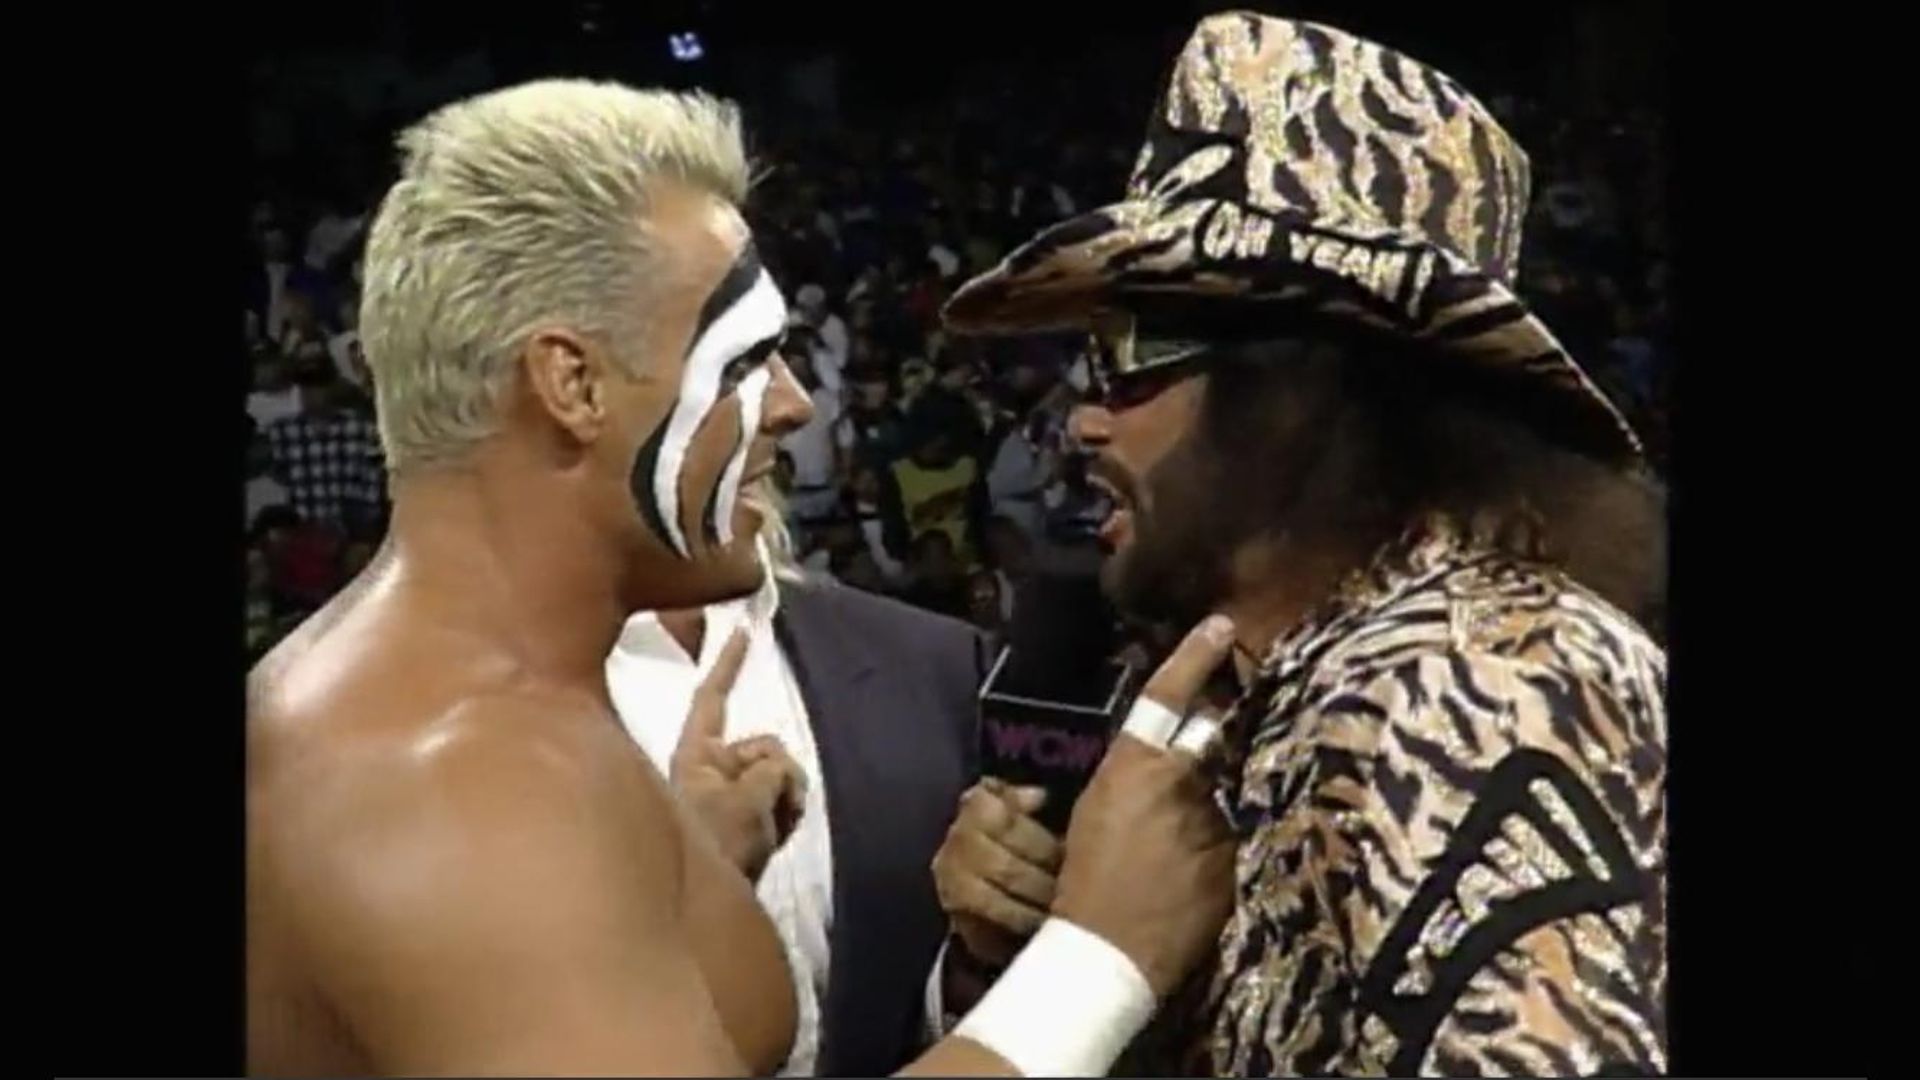 WCW Monday Nitro background